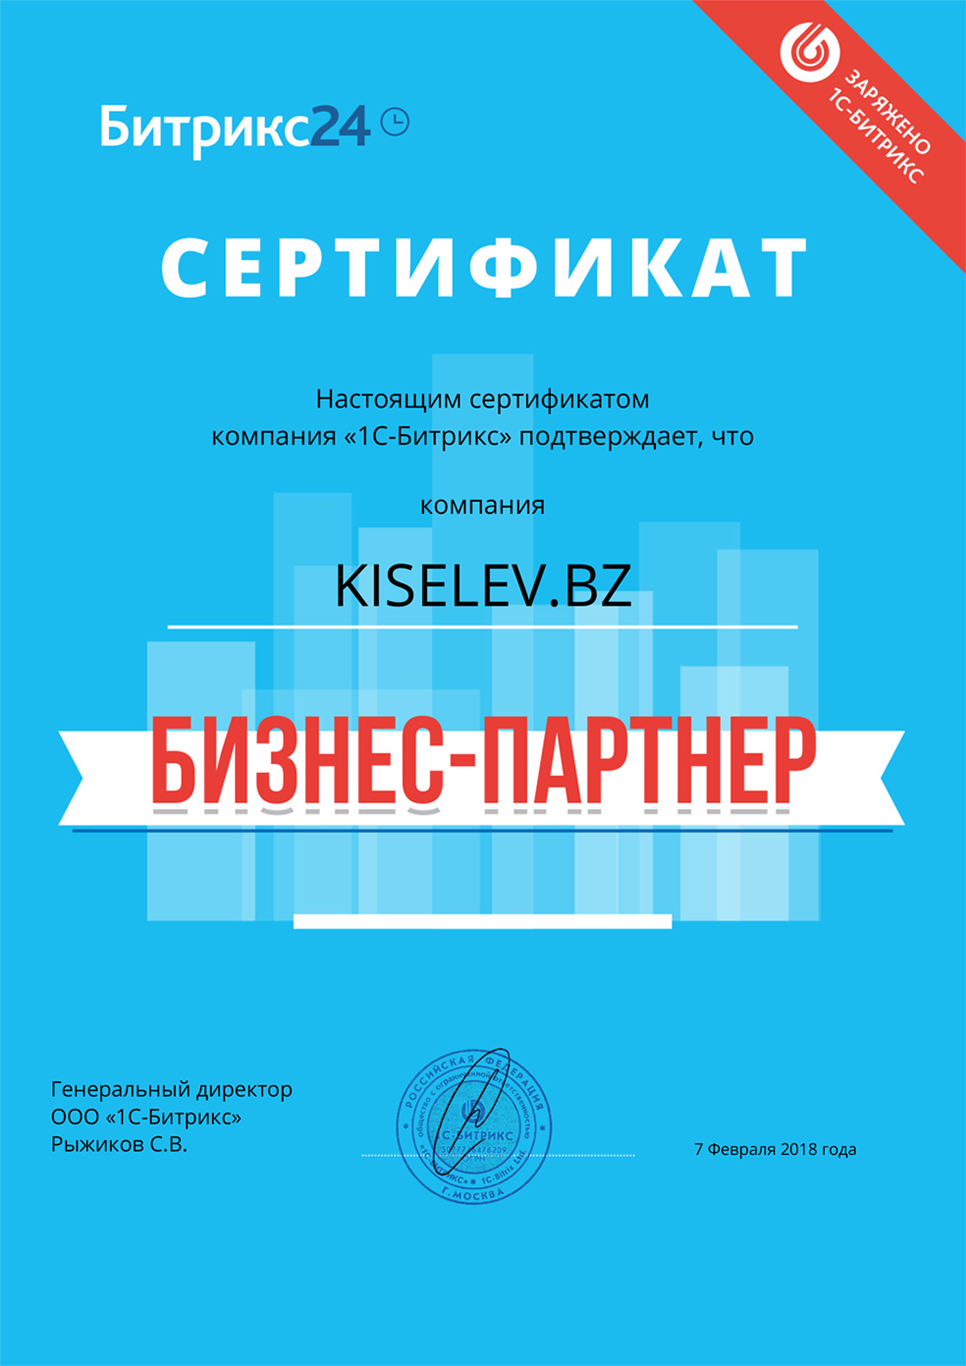 Сертификат партнёра по АМОСРМ в Чехове